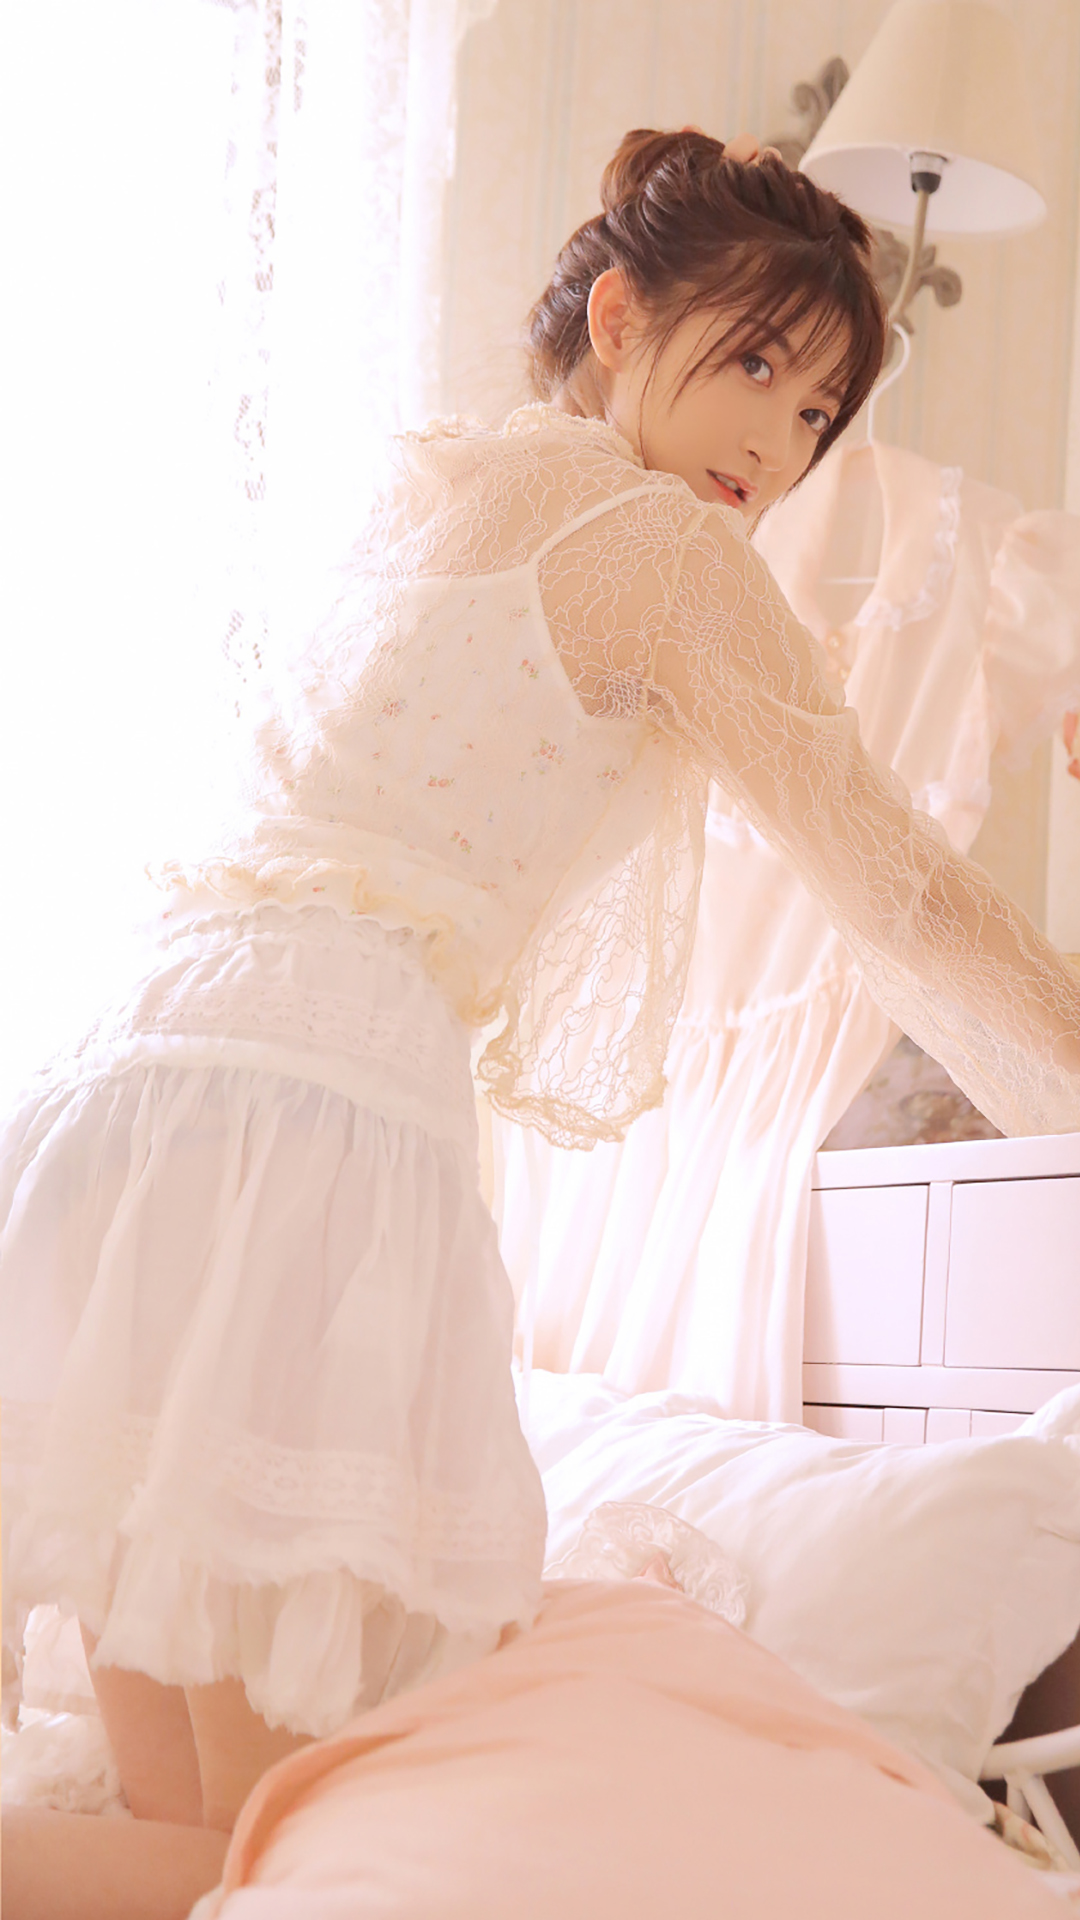 白色蕾丝纱裙丸子头清纯美女